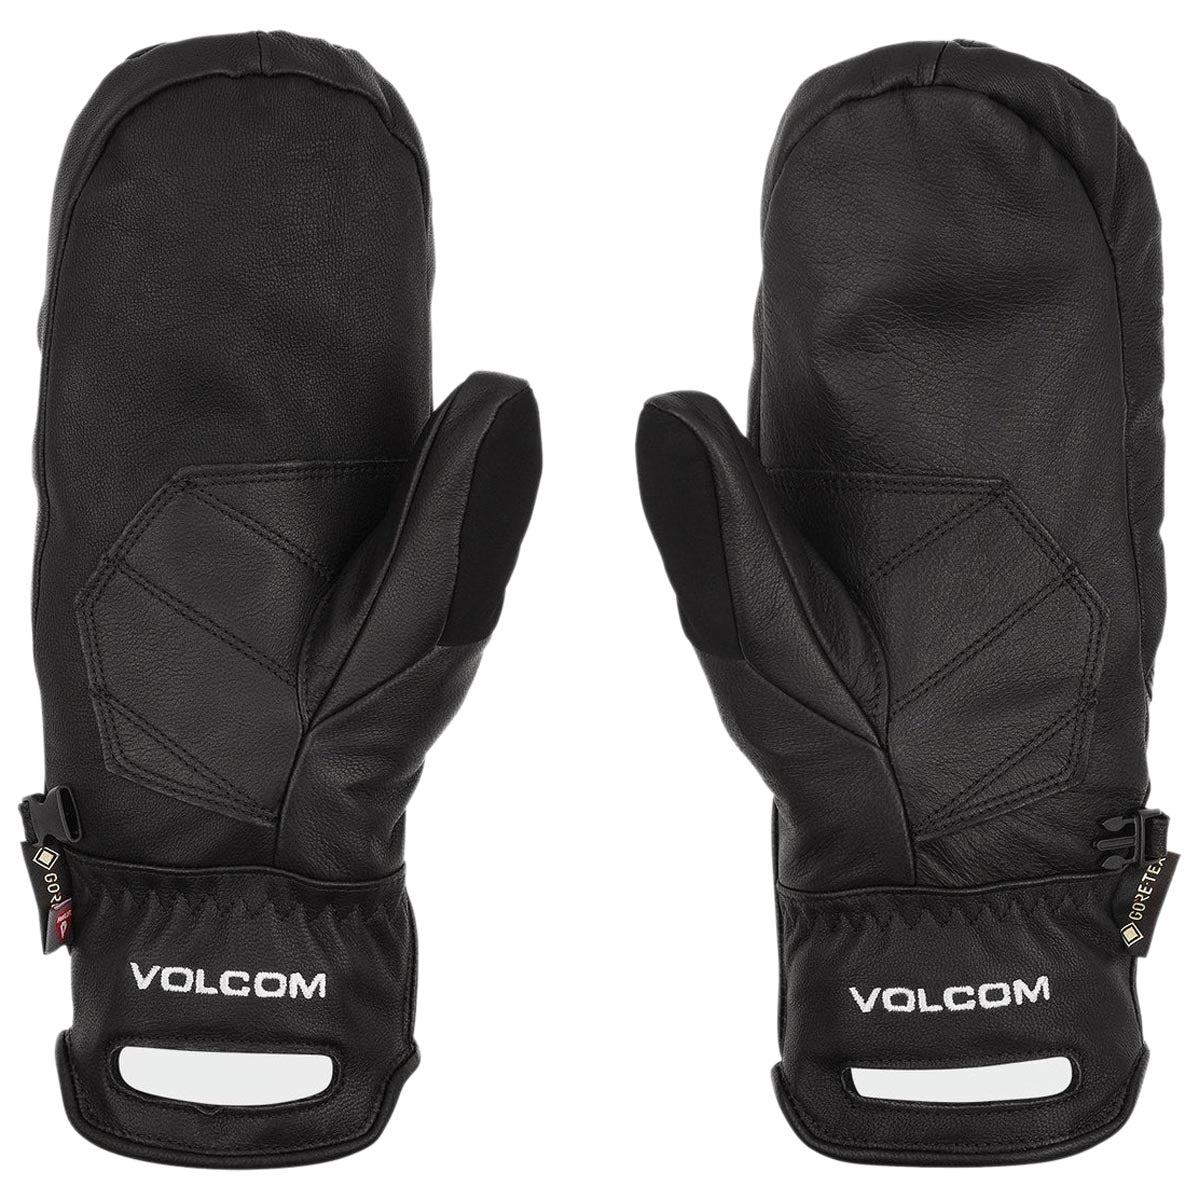 Volcom Service Gore-tex Mitt Snowboard Gloves - Black image 2